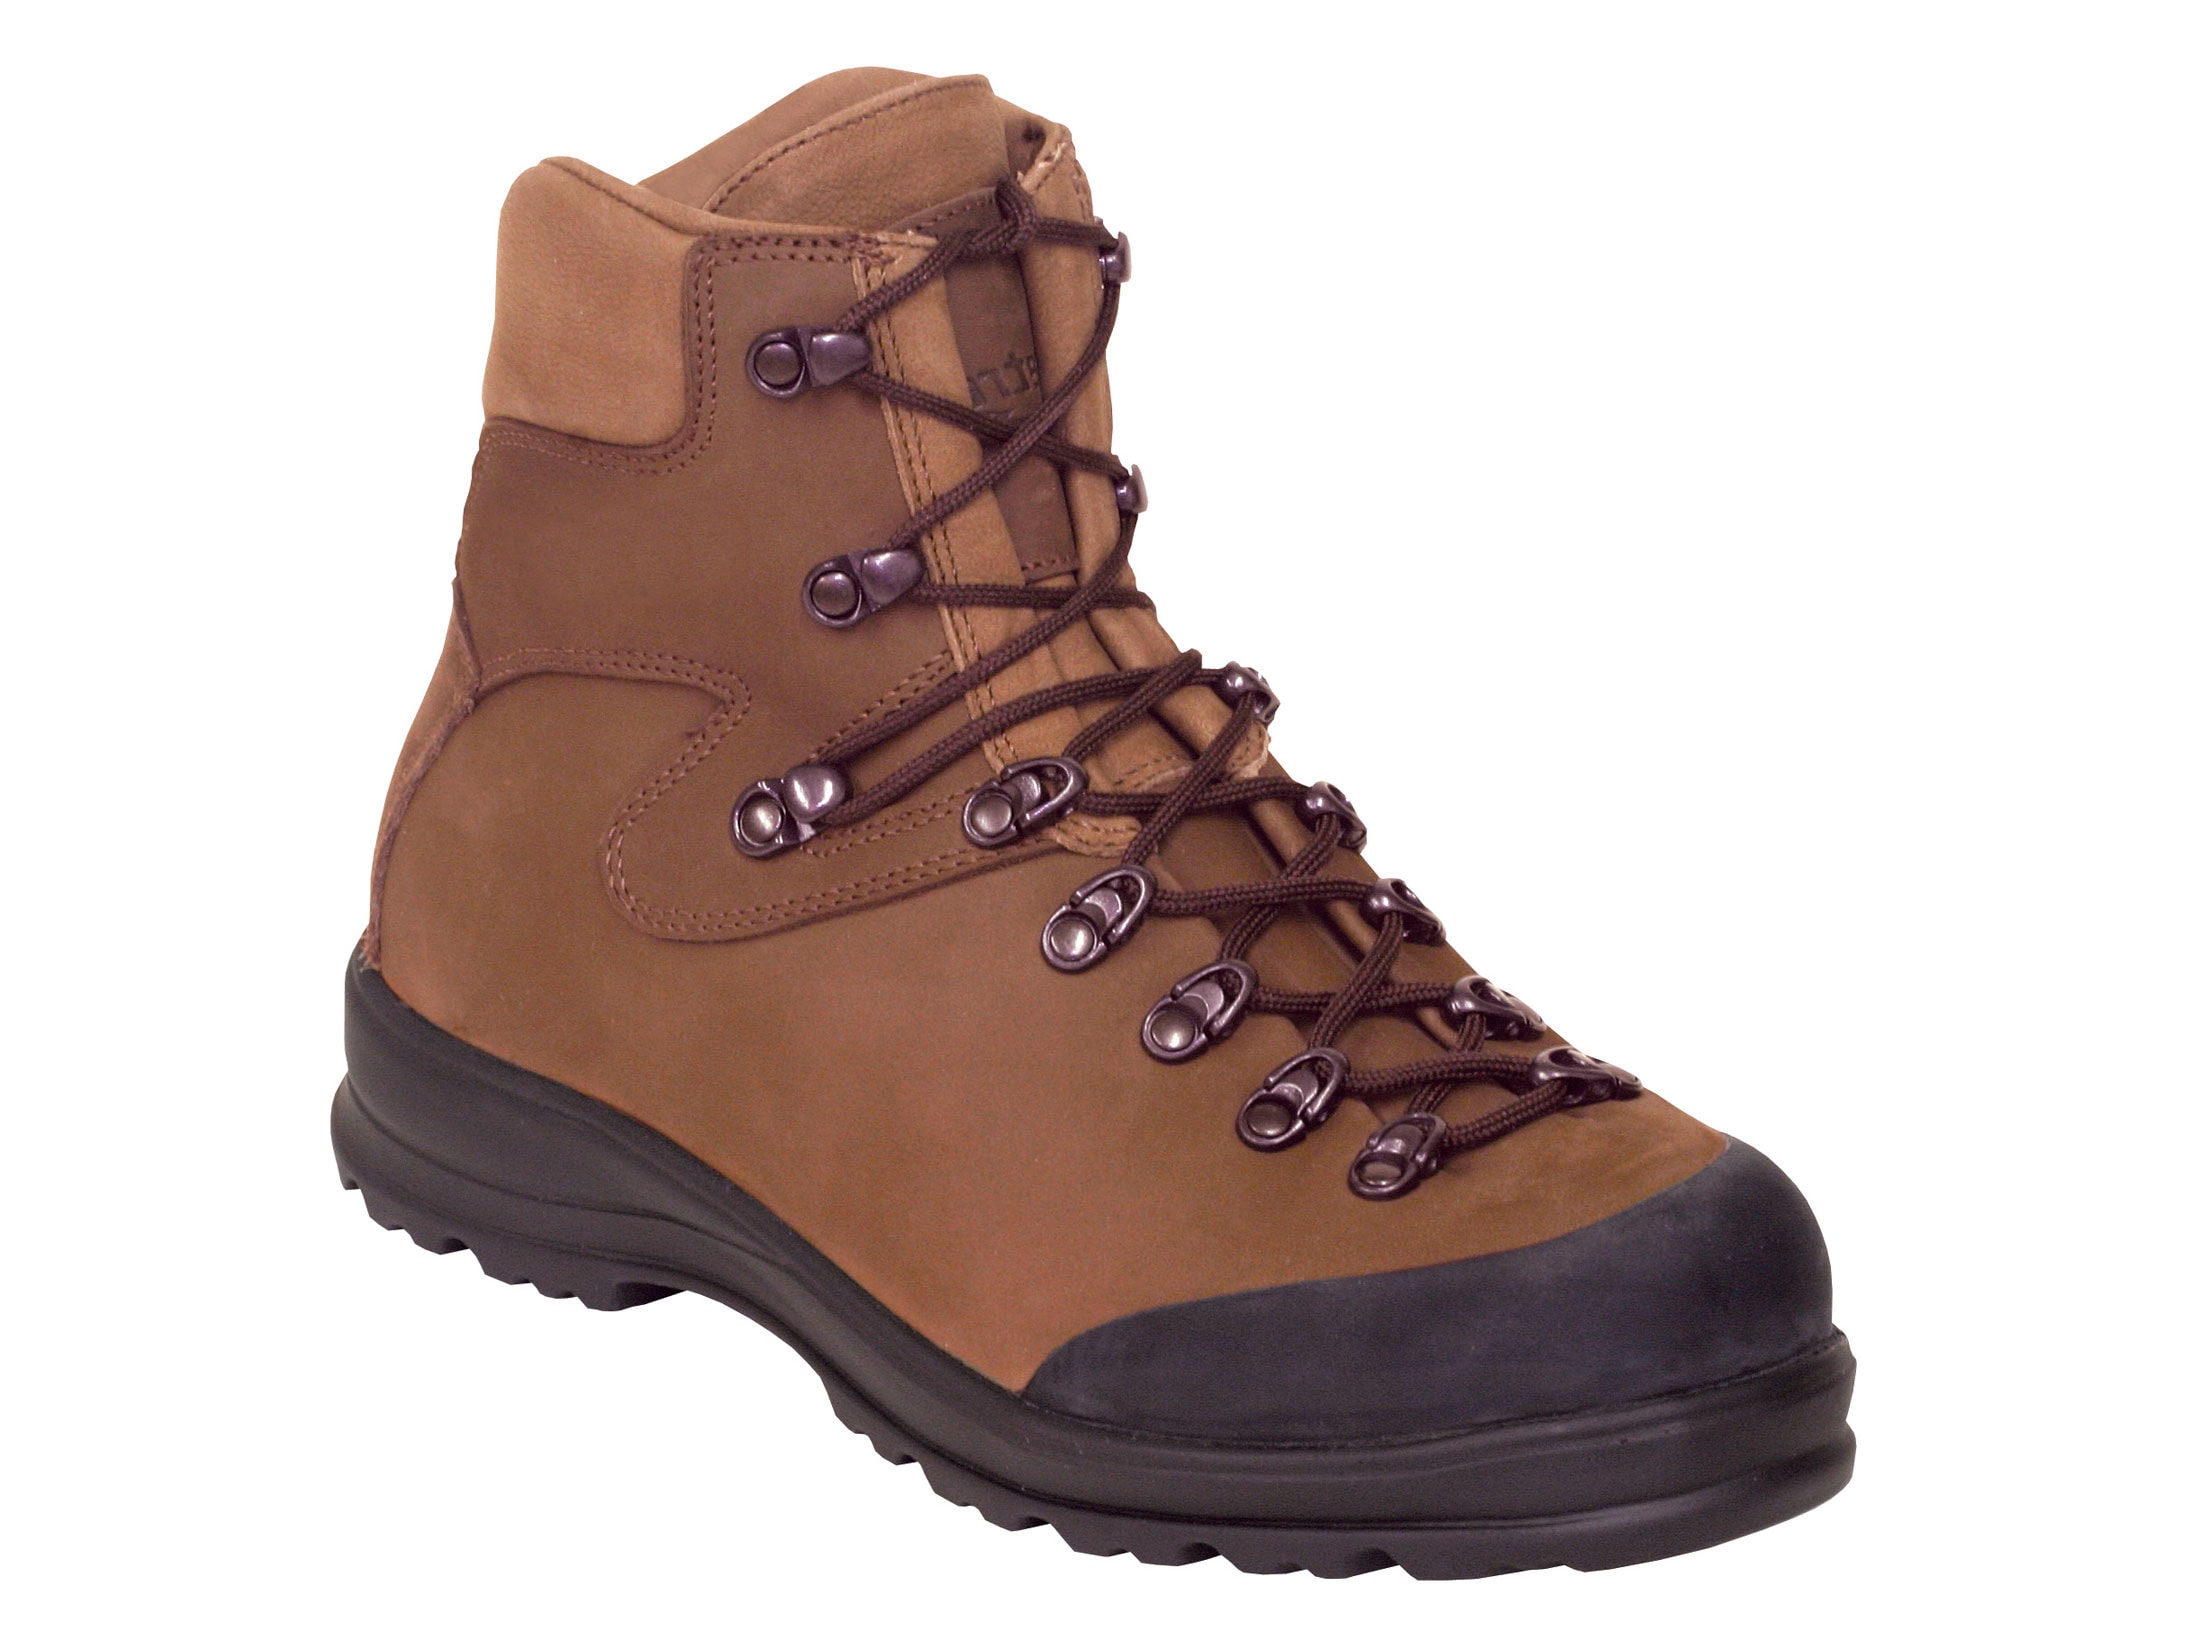 Kenetrek Safari 7 Hunting Boots Leather Brown Men's 10.5 D